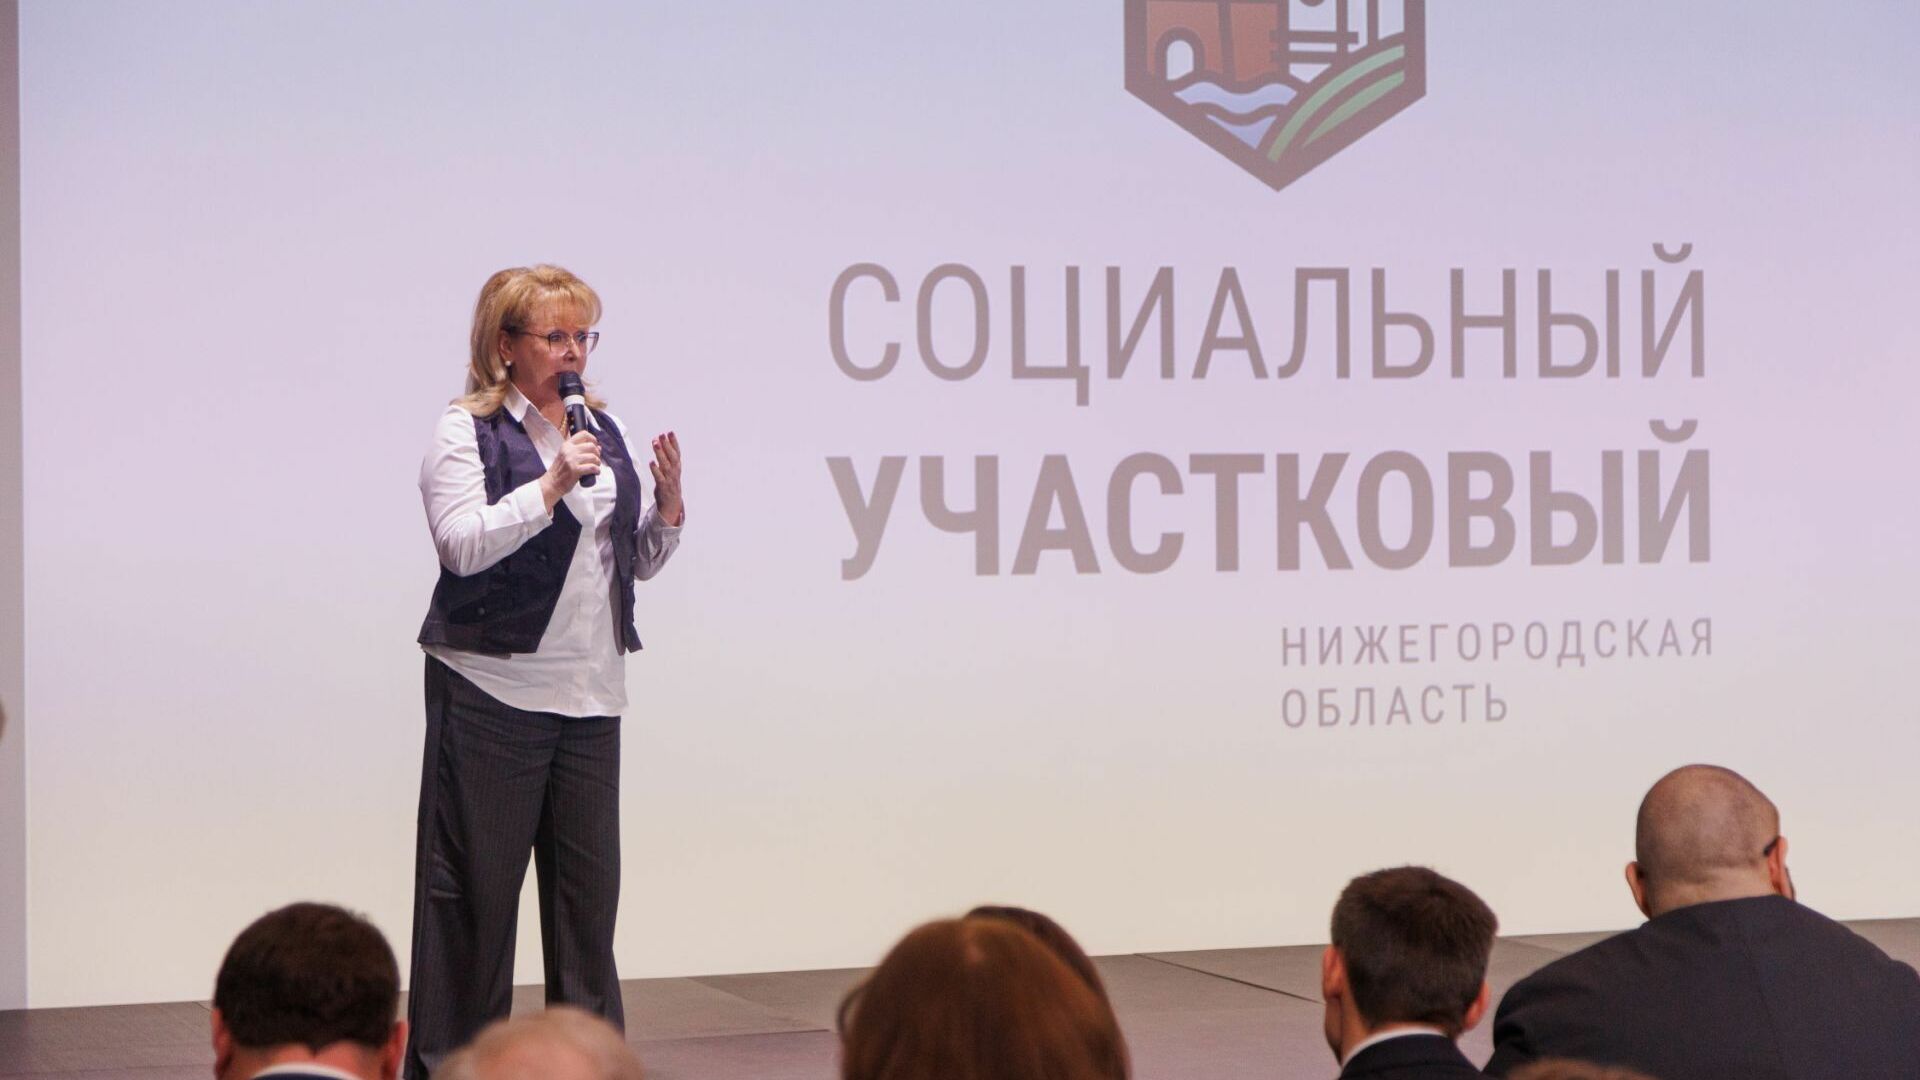 Проект «Социальный участковый» стартовал в Нижегородской области